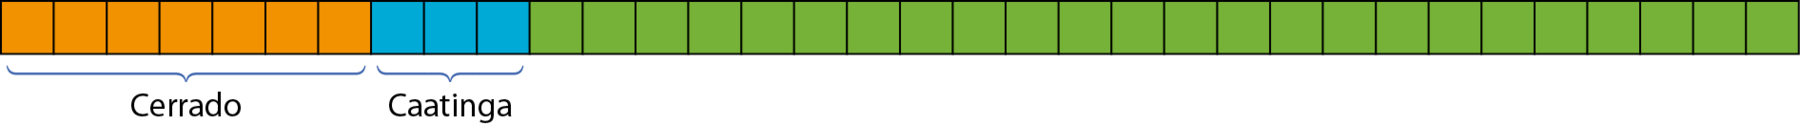 Ilustração. Barra dividida em trinta e quatro partes iguais, sendo sete partes pintadas de laranja (Cerrado), três partes pintadas de azul (Caatinga) e o restante de verde.